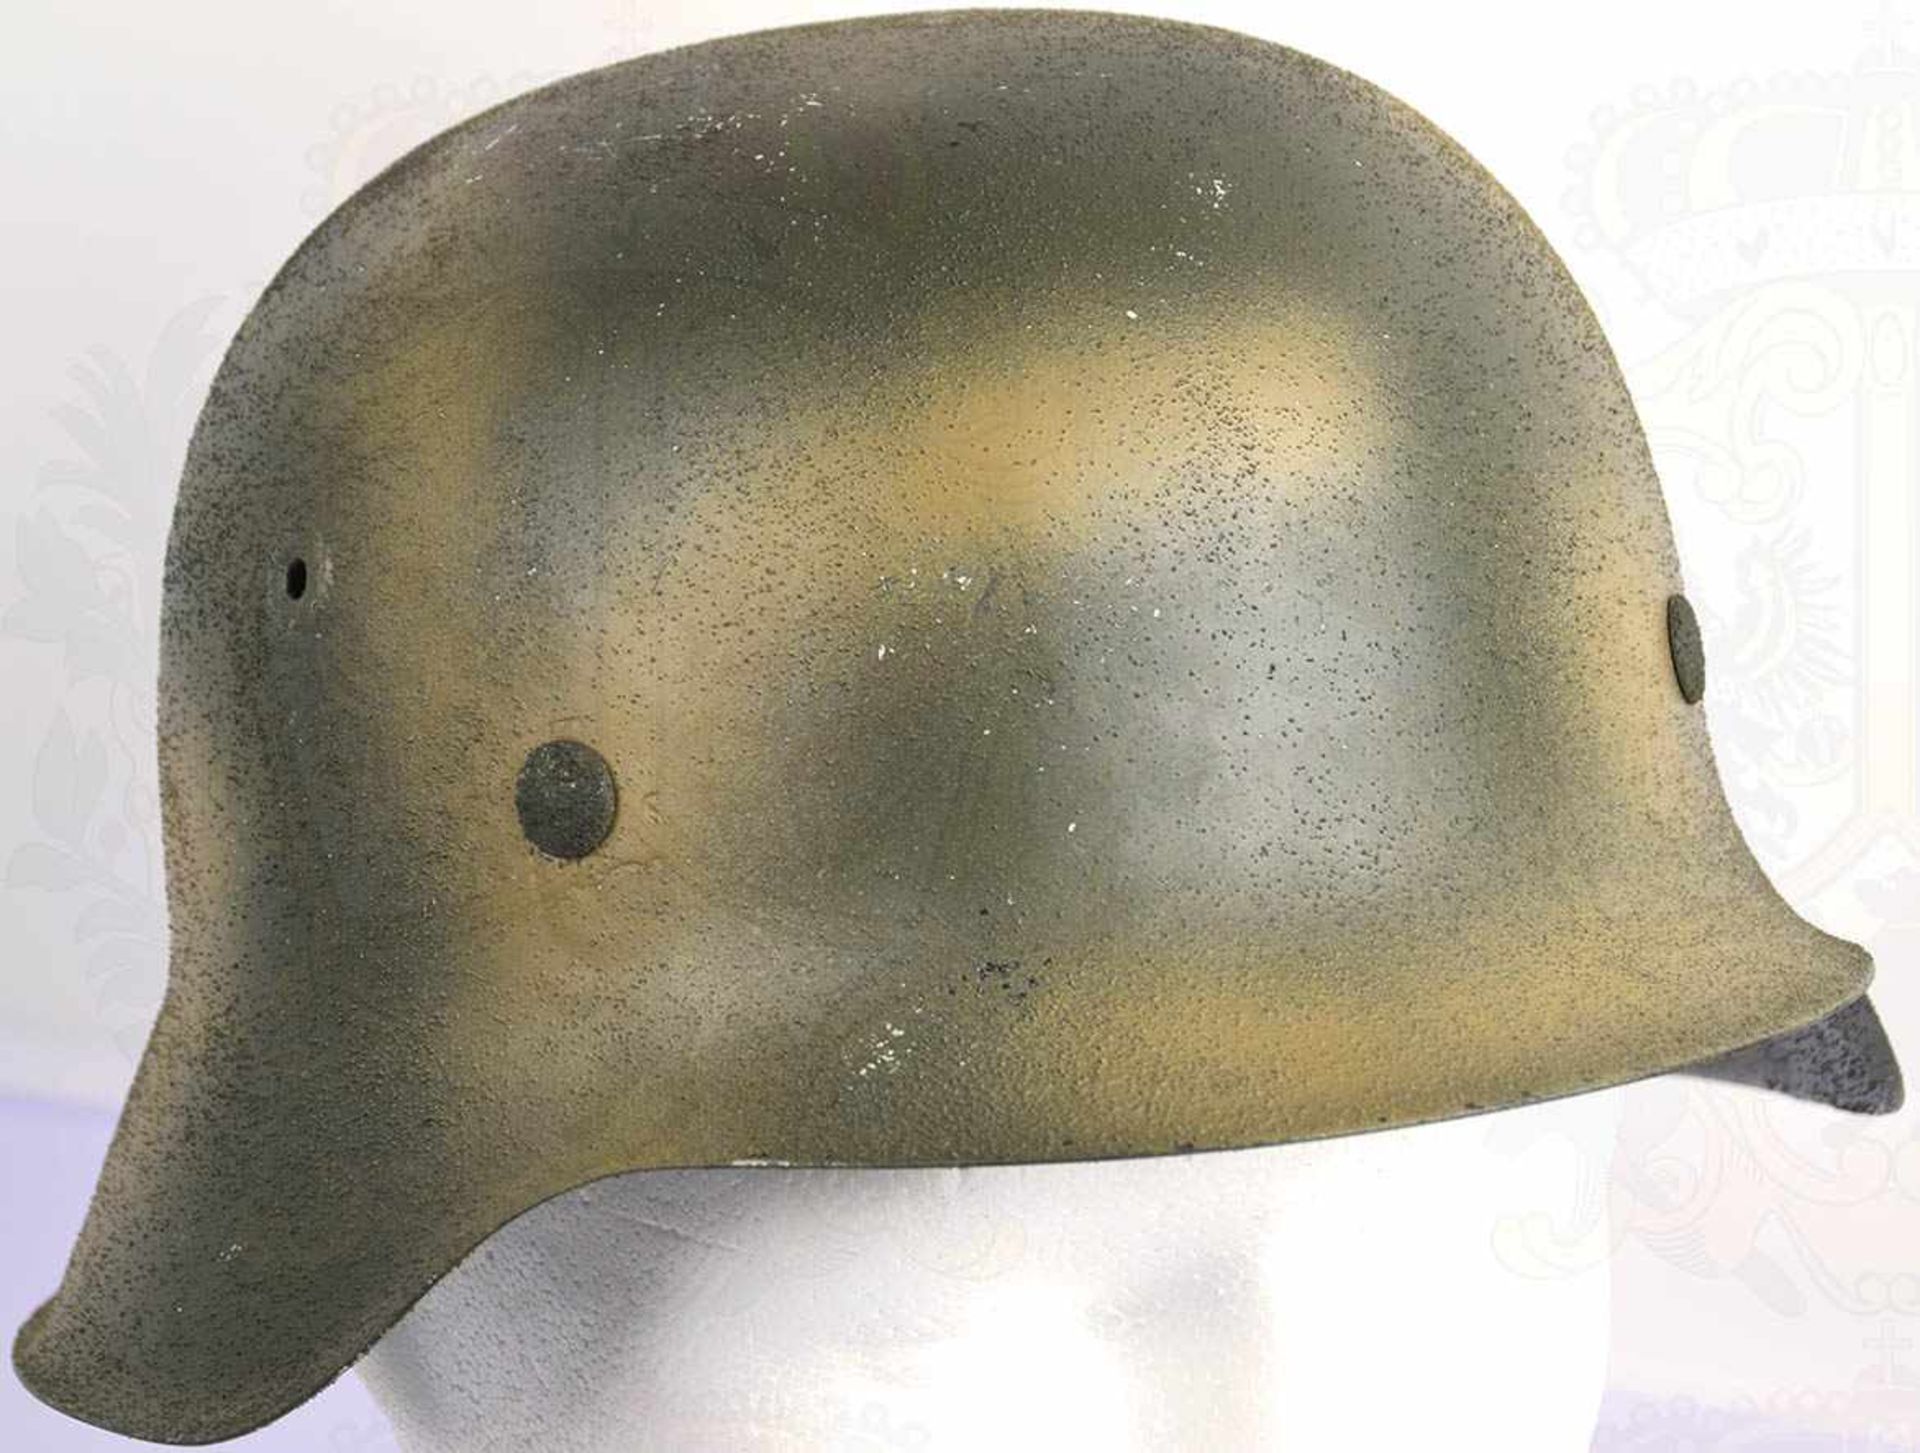 STAHLHELM M 42, Sammleranfertigung, grün/sandfarbene Rauhtarnlackierung, älteres Leder-